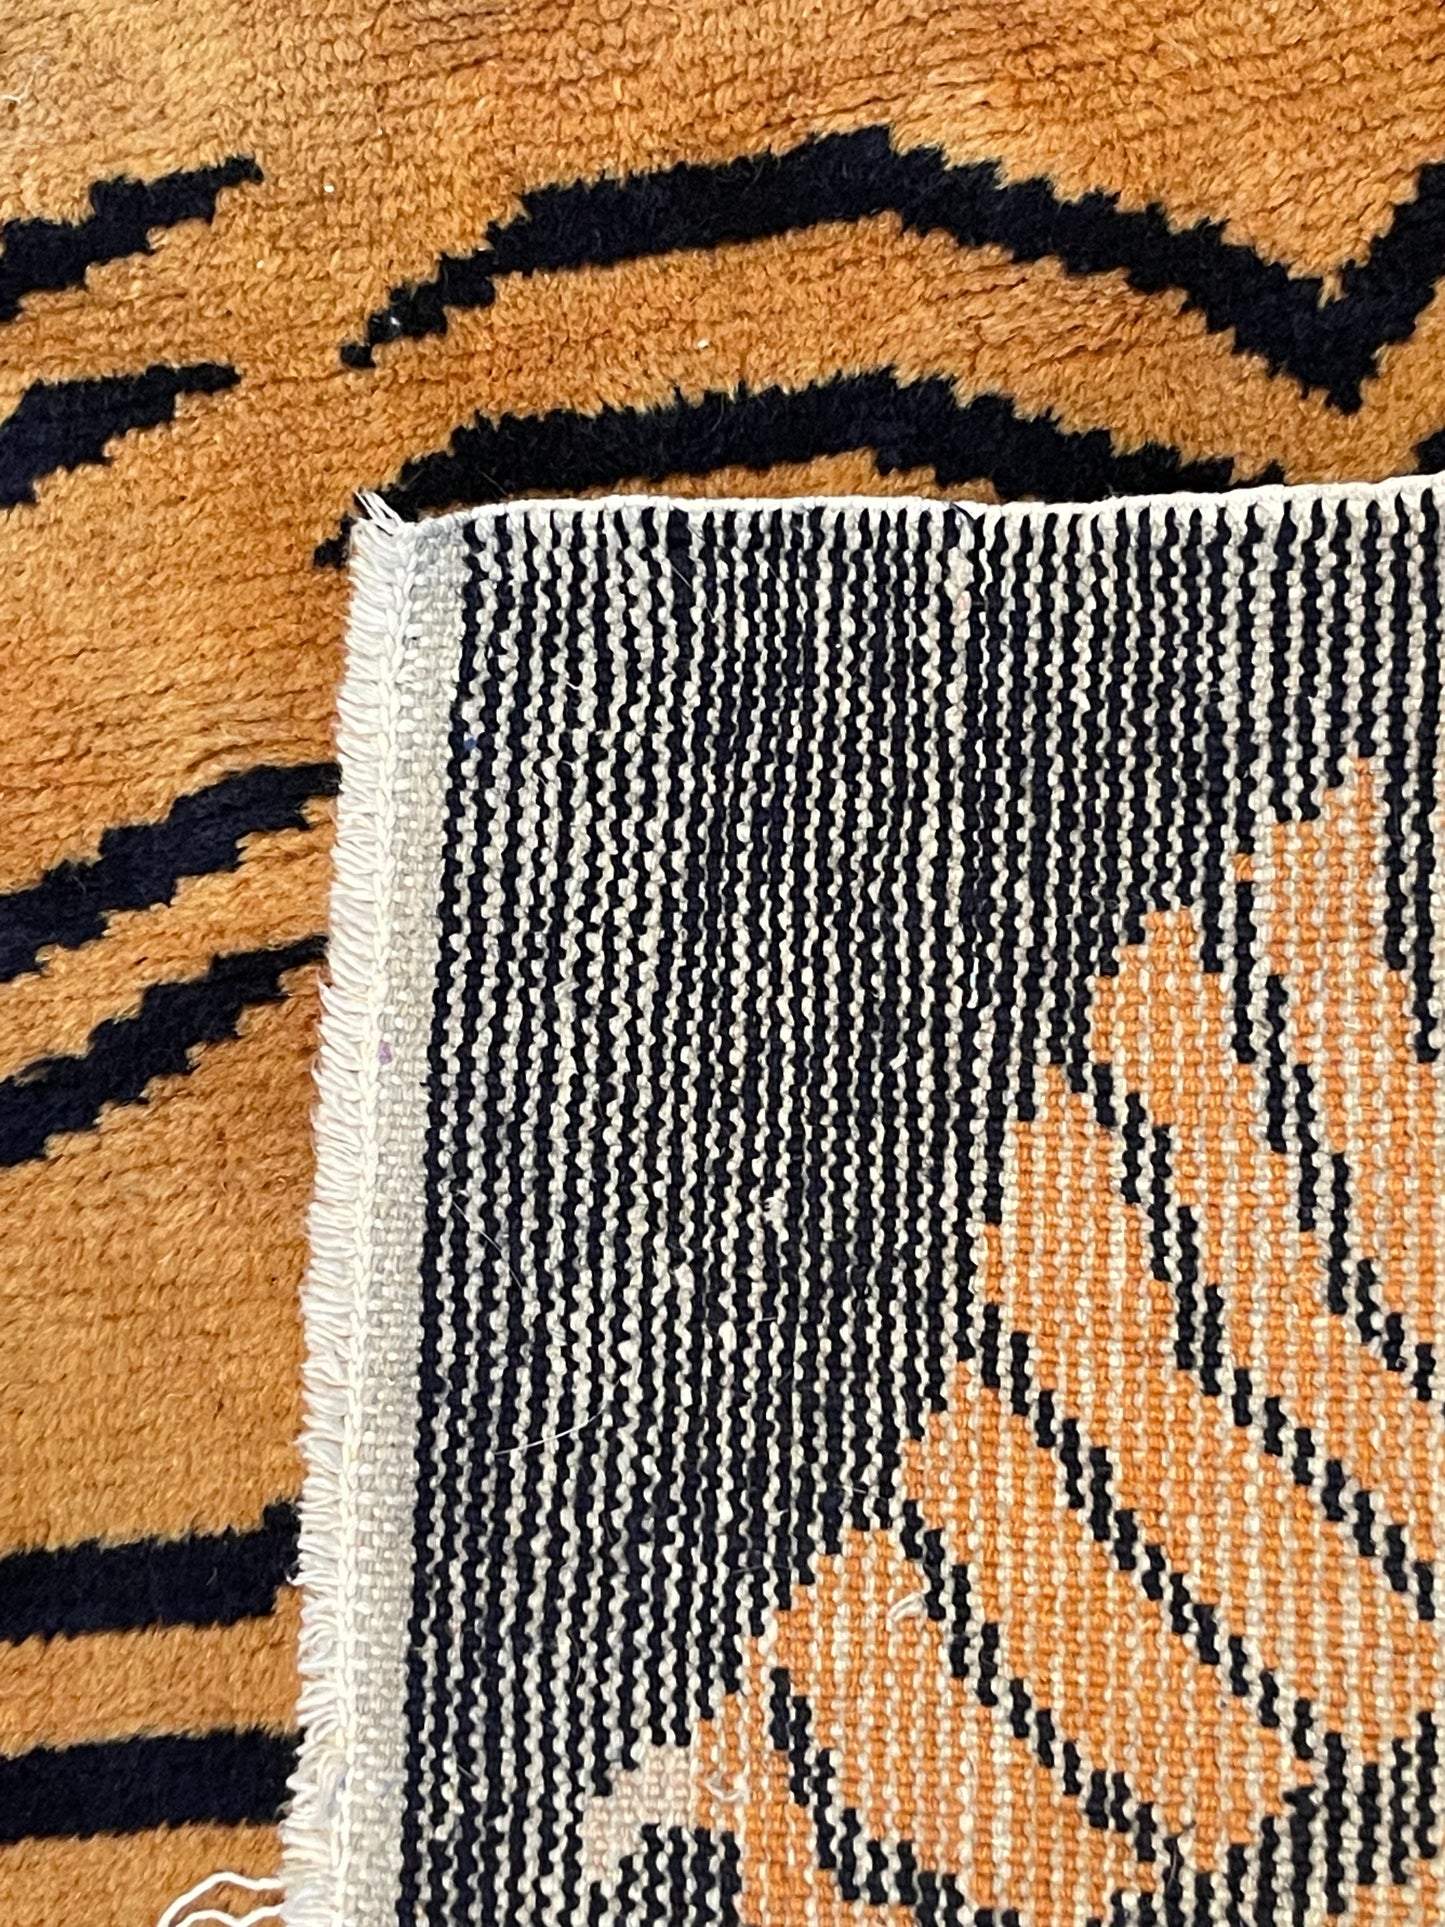 Vintage Tibetan Tiger rug